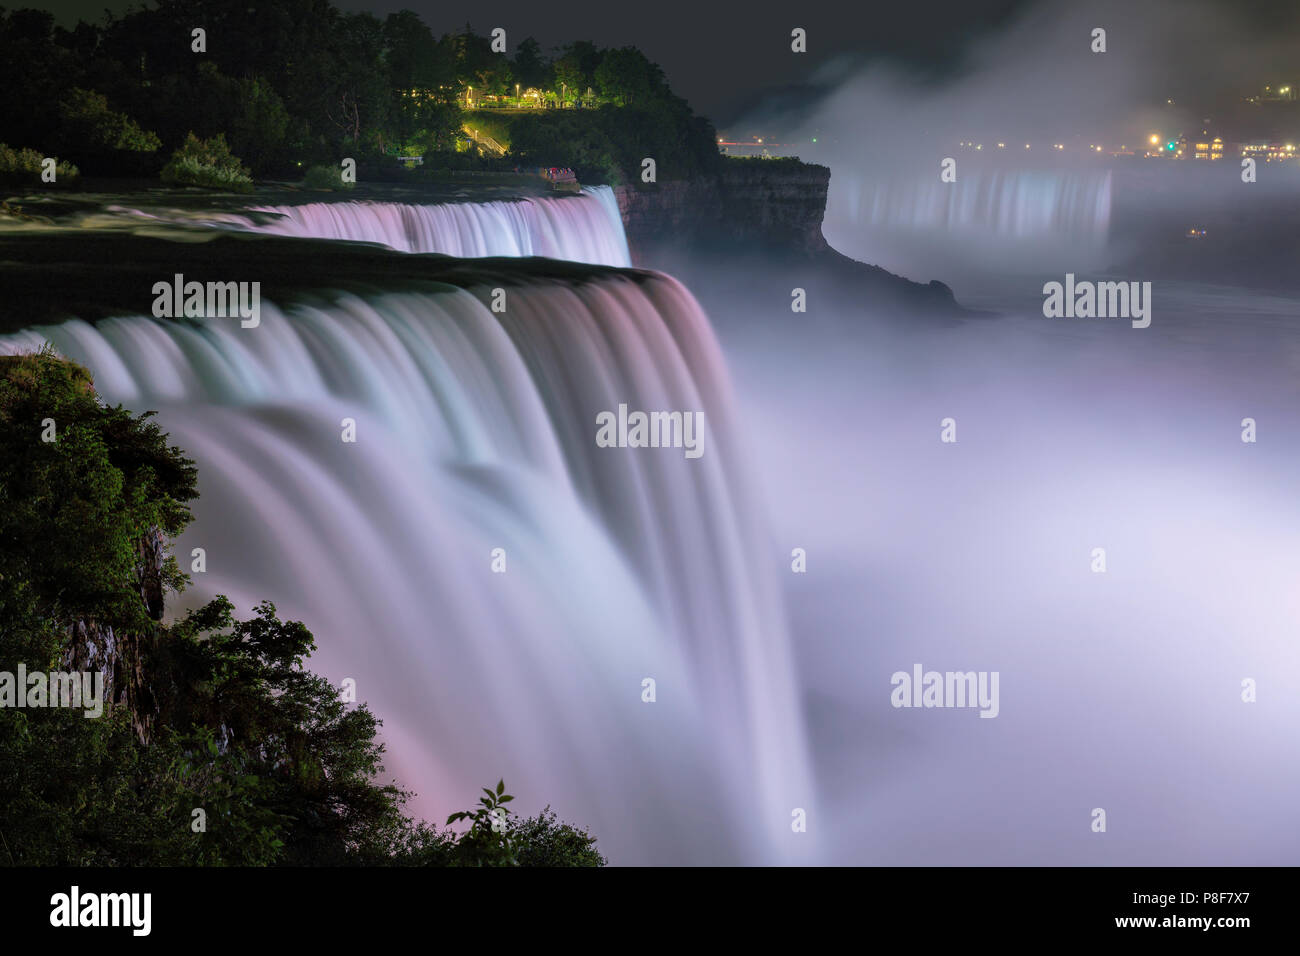 Les chutes du Niagara éclairées la nuit par des lumières colorées Banque D'Images